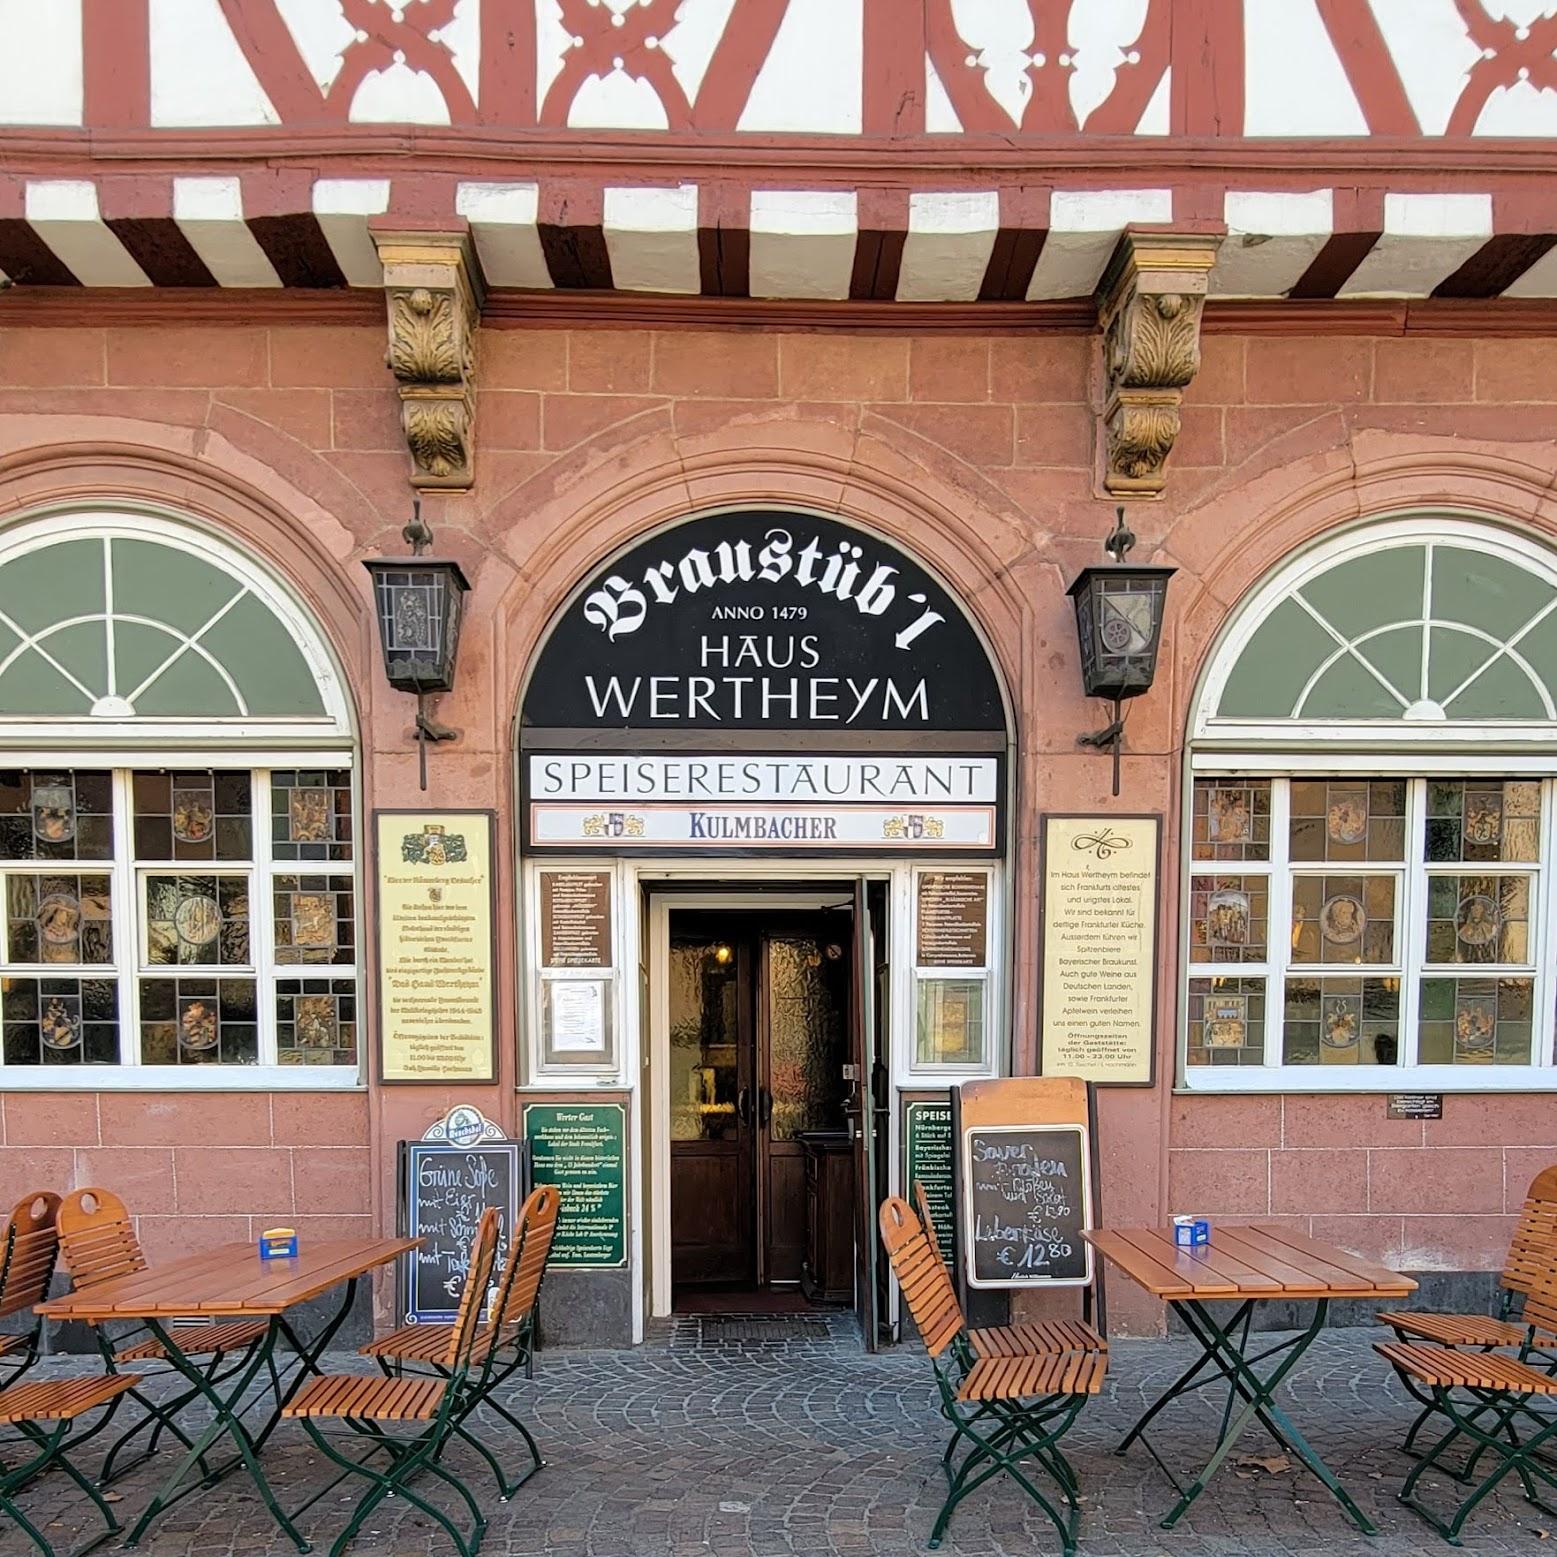 Restaurant "Haus Wertheym" in Frankfurt am Main